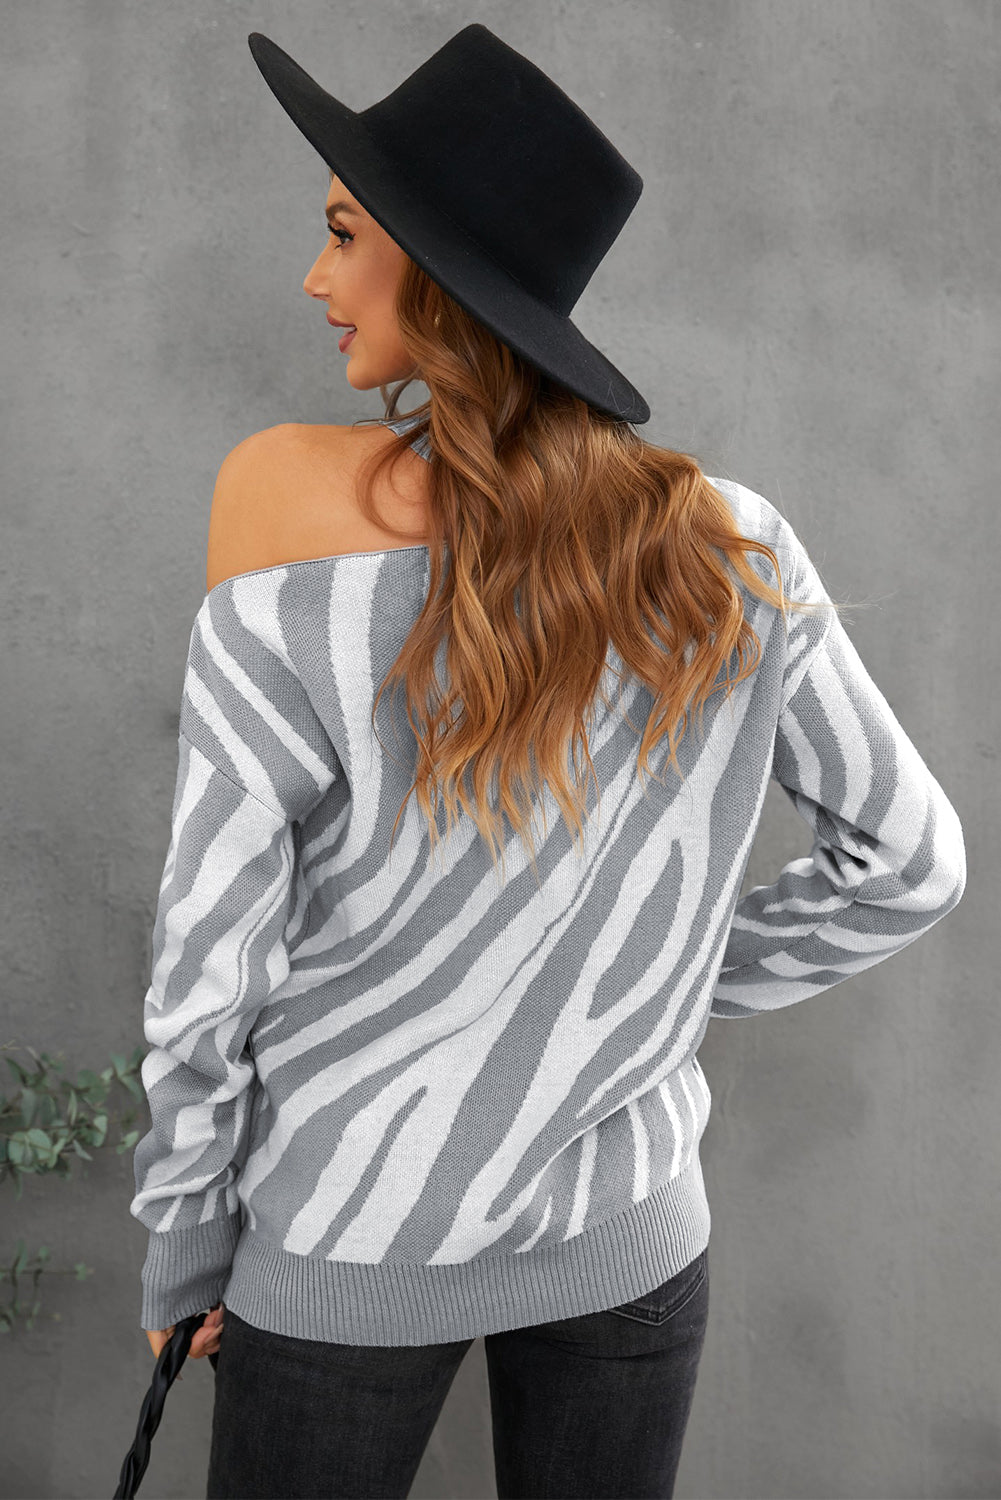 Buy Zebra Sweaters for Women Online